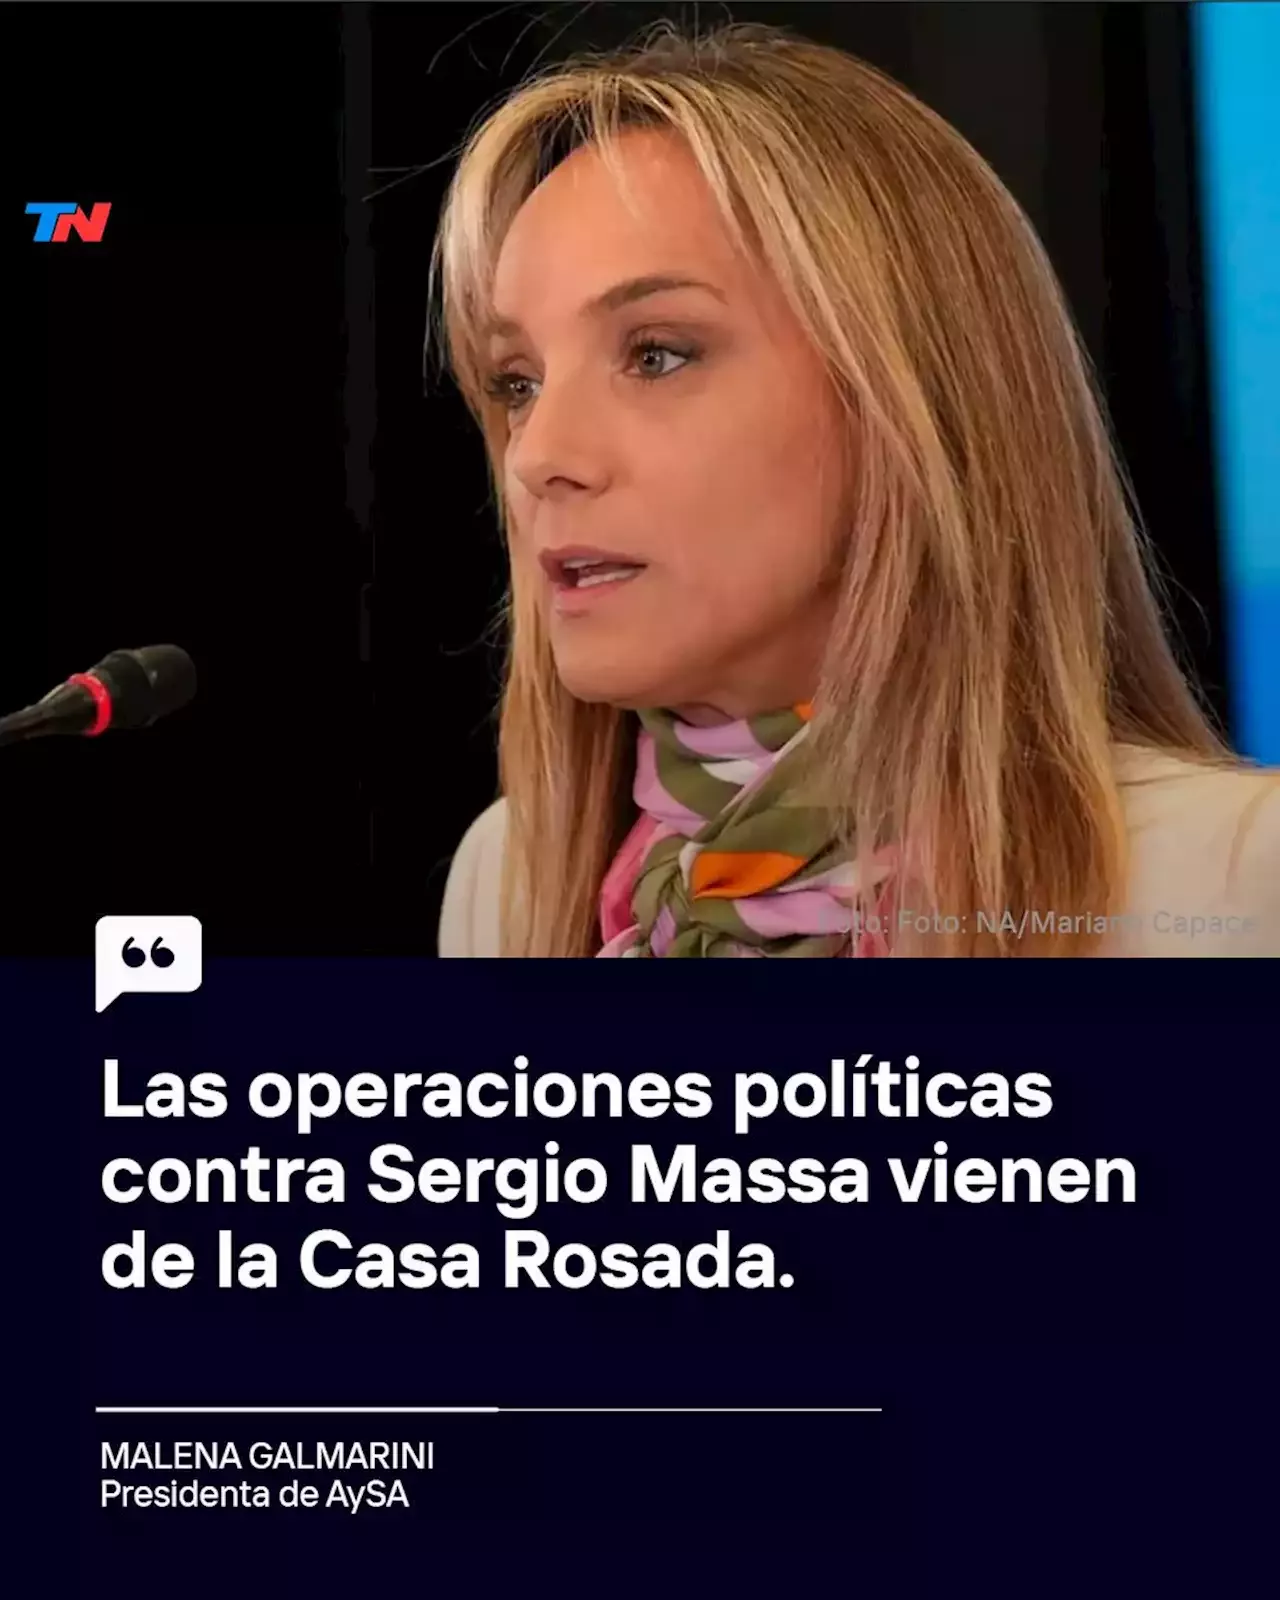 Malena Galmarini: “Las operaciones políticas contra Sergio Massa vienen de  la Casa Rosada”